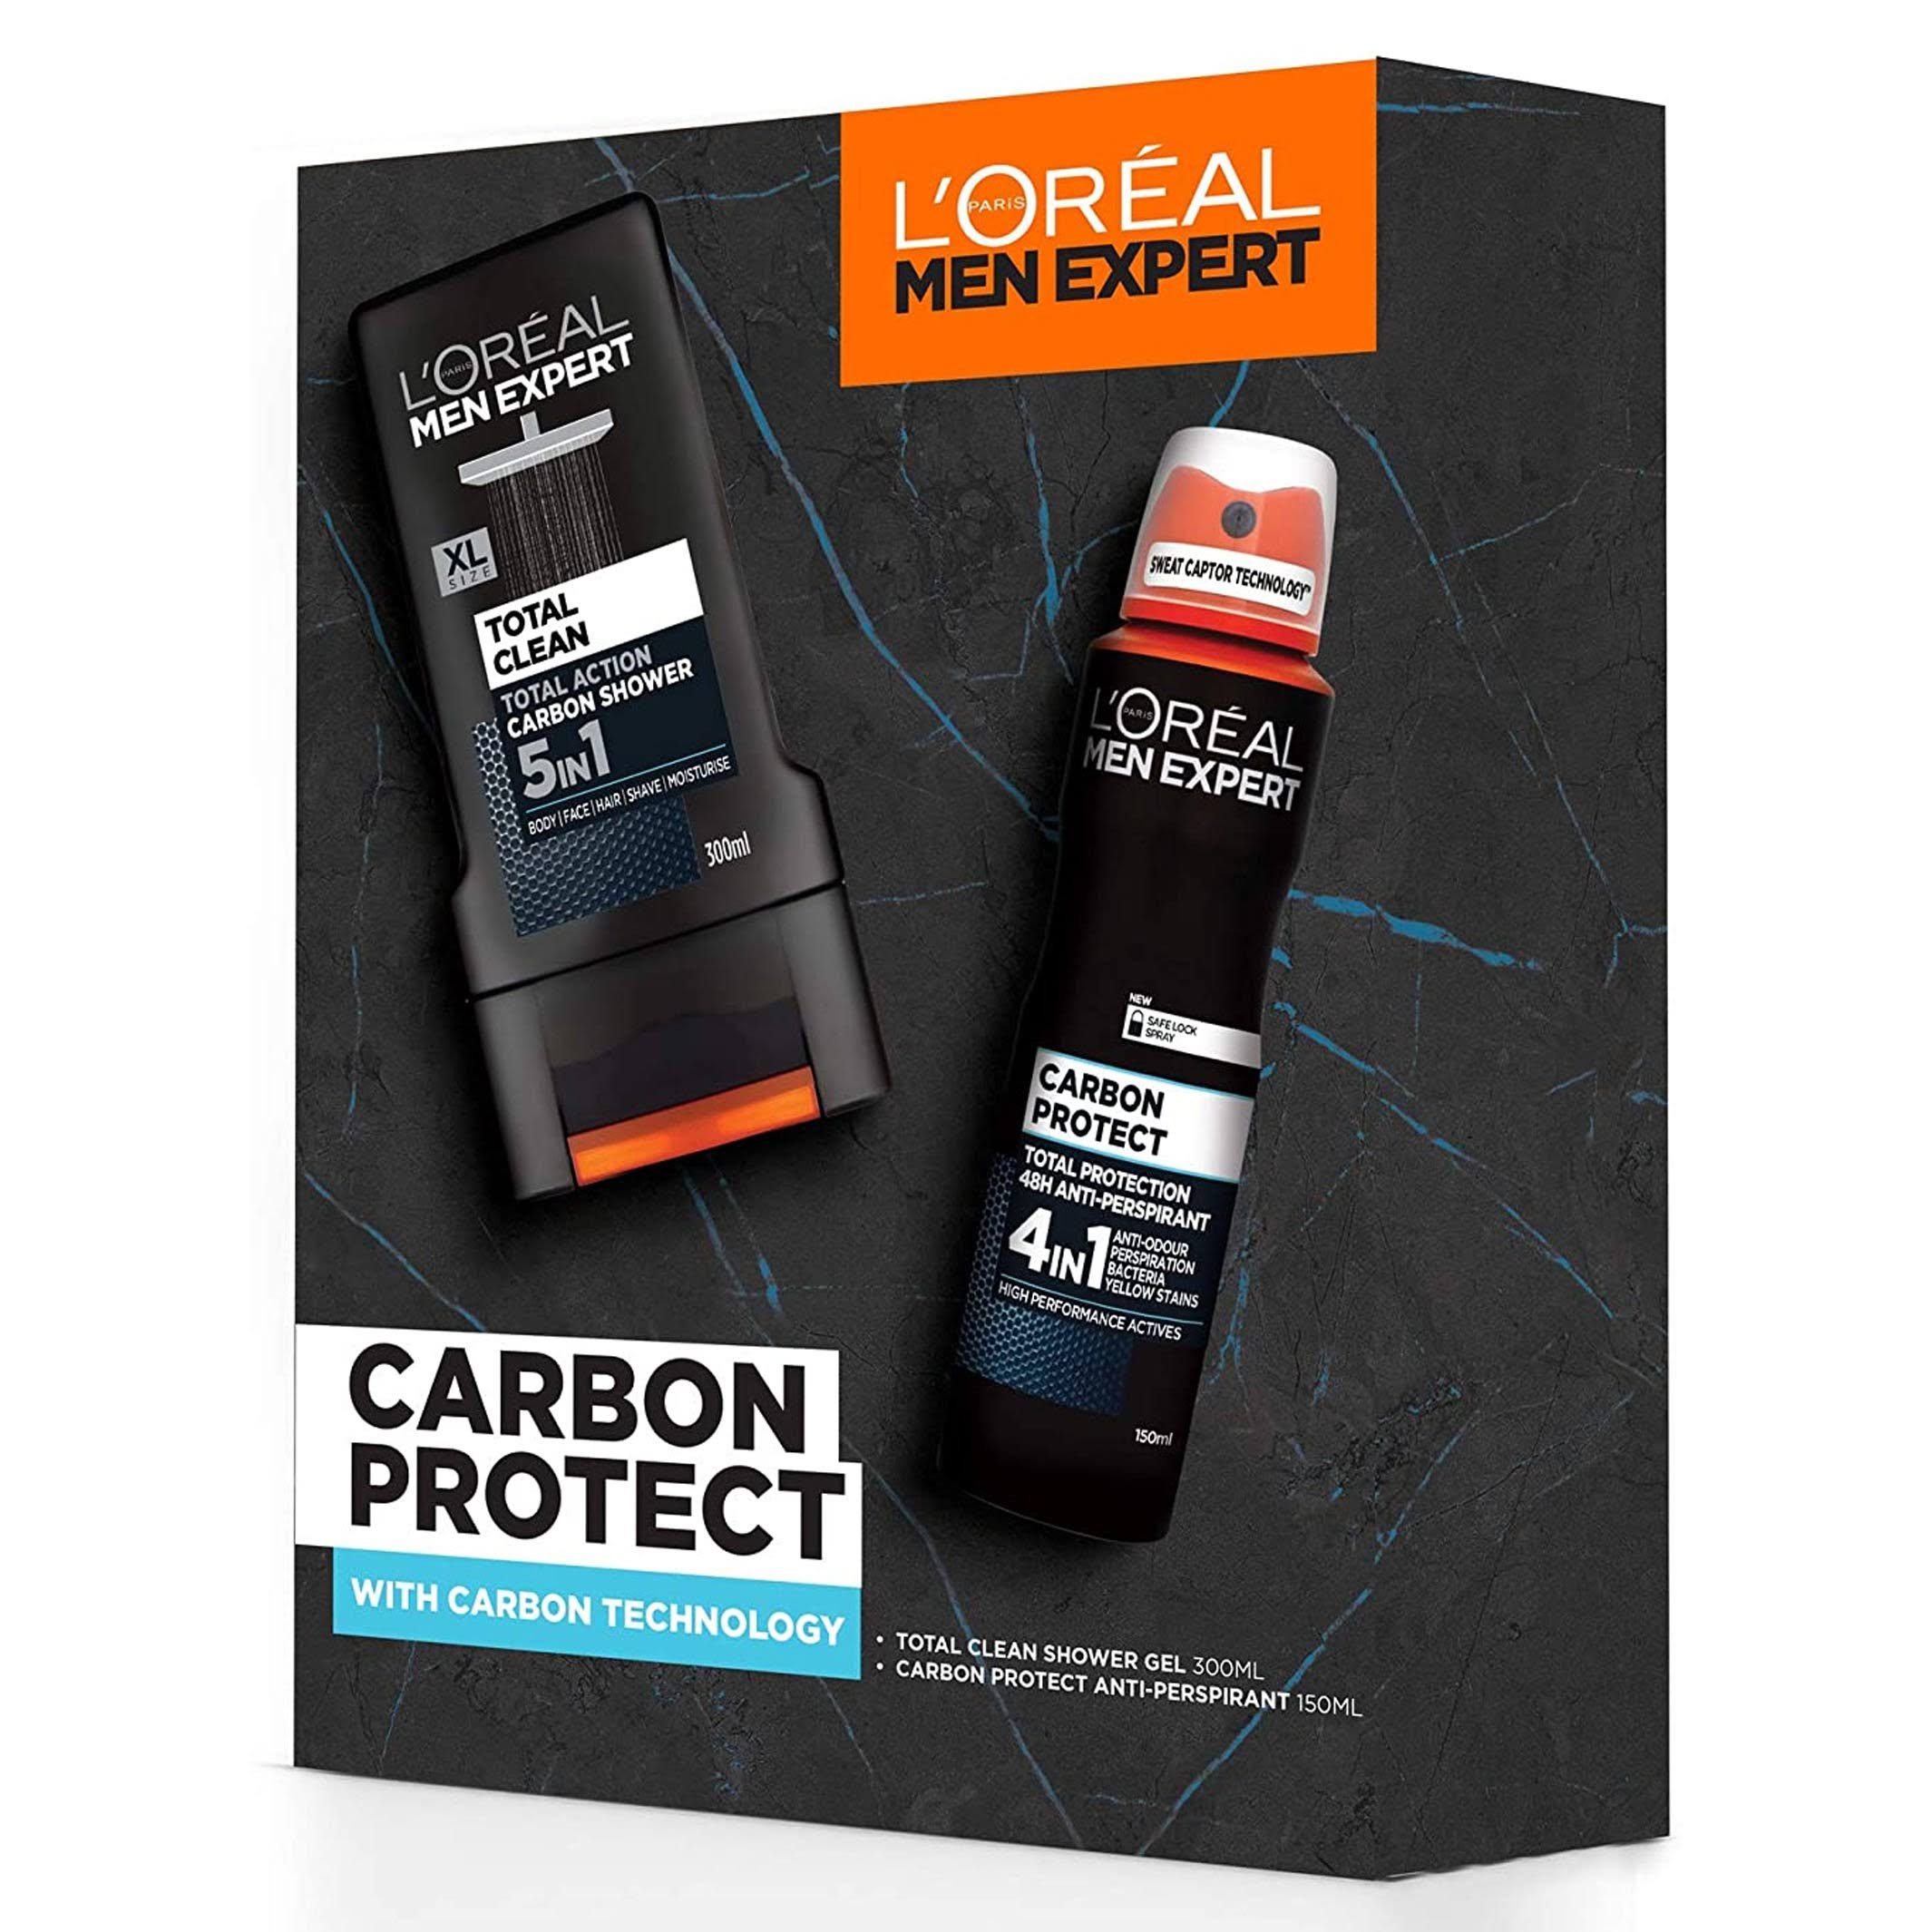 L'Oréal Men Expert Carbon Protect 2 Piece Gift Set For Him